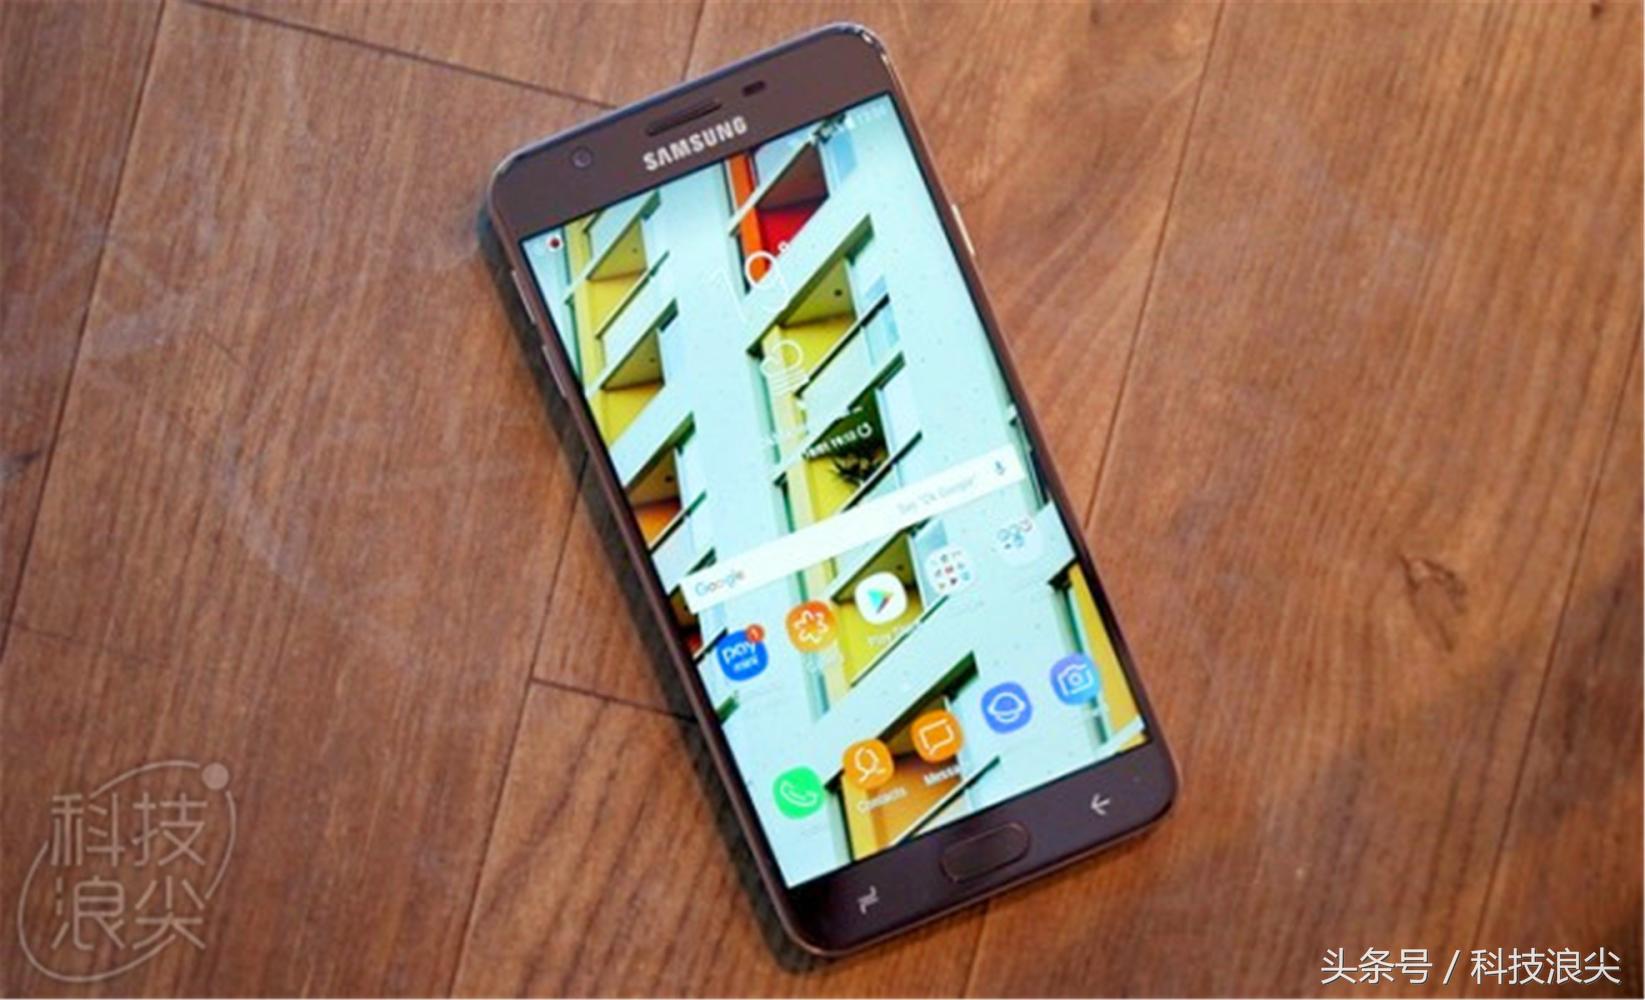 2018最新款三星Galaxy On7 Prime测评：双卡双待千元手机 猎户座八核